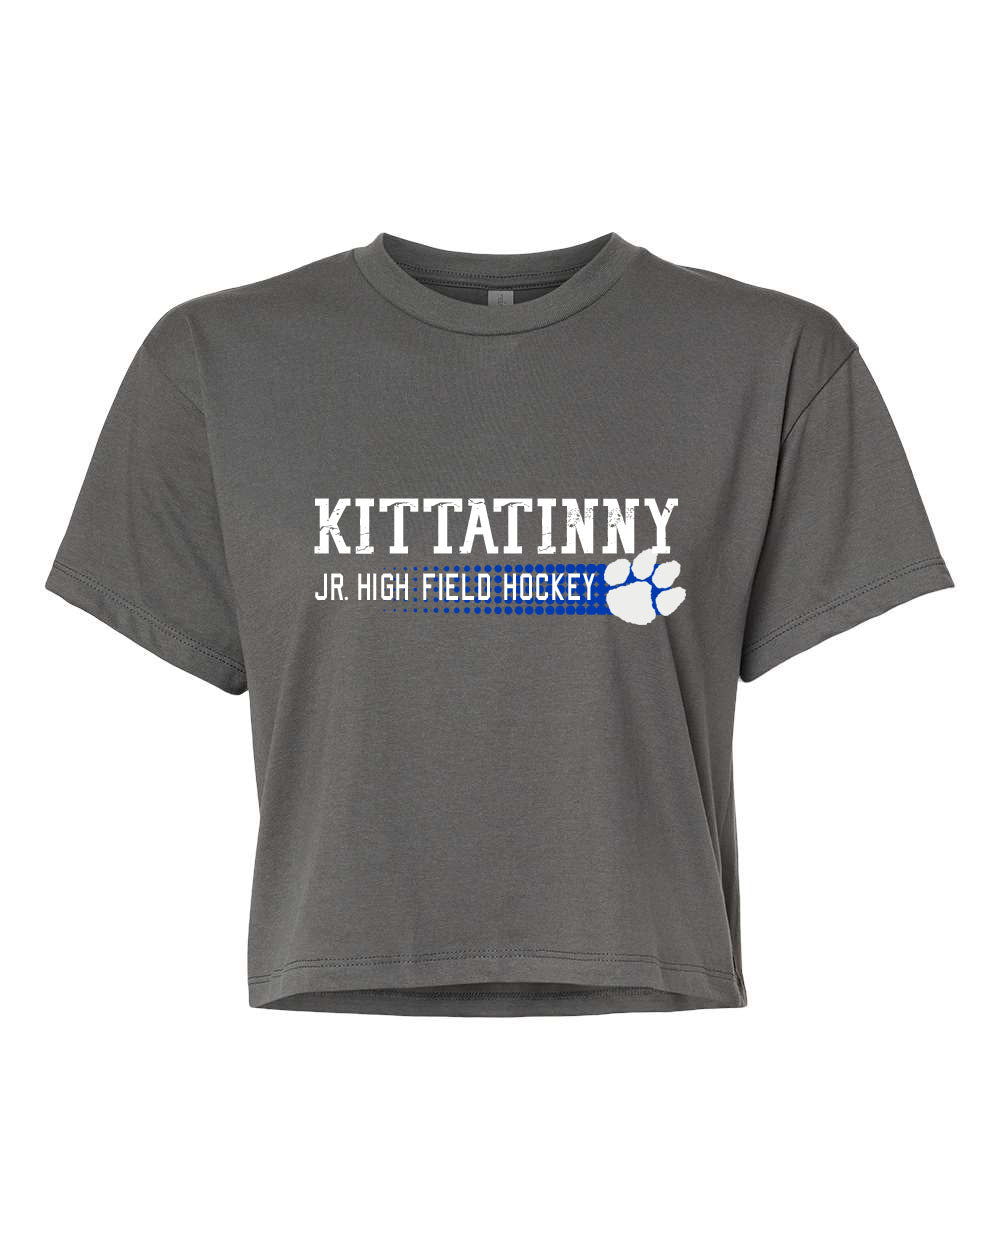 Kittatinny Jr Field hockey Design 3 Crop Top